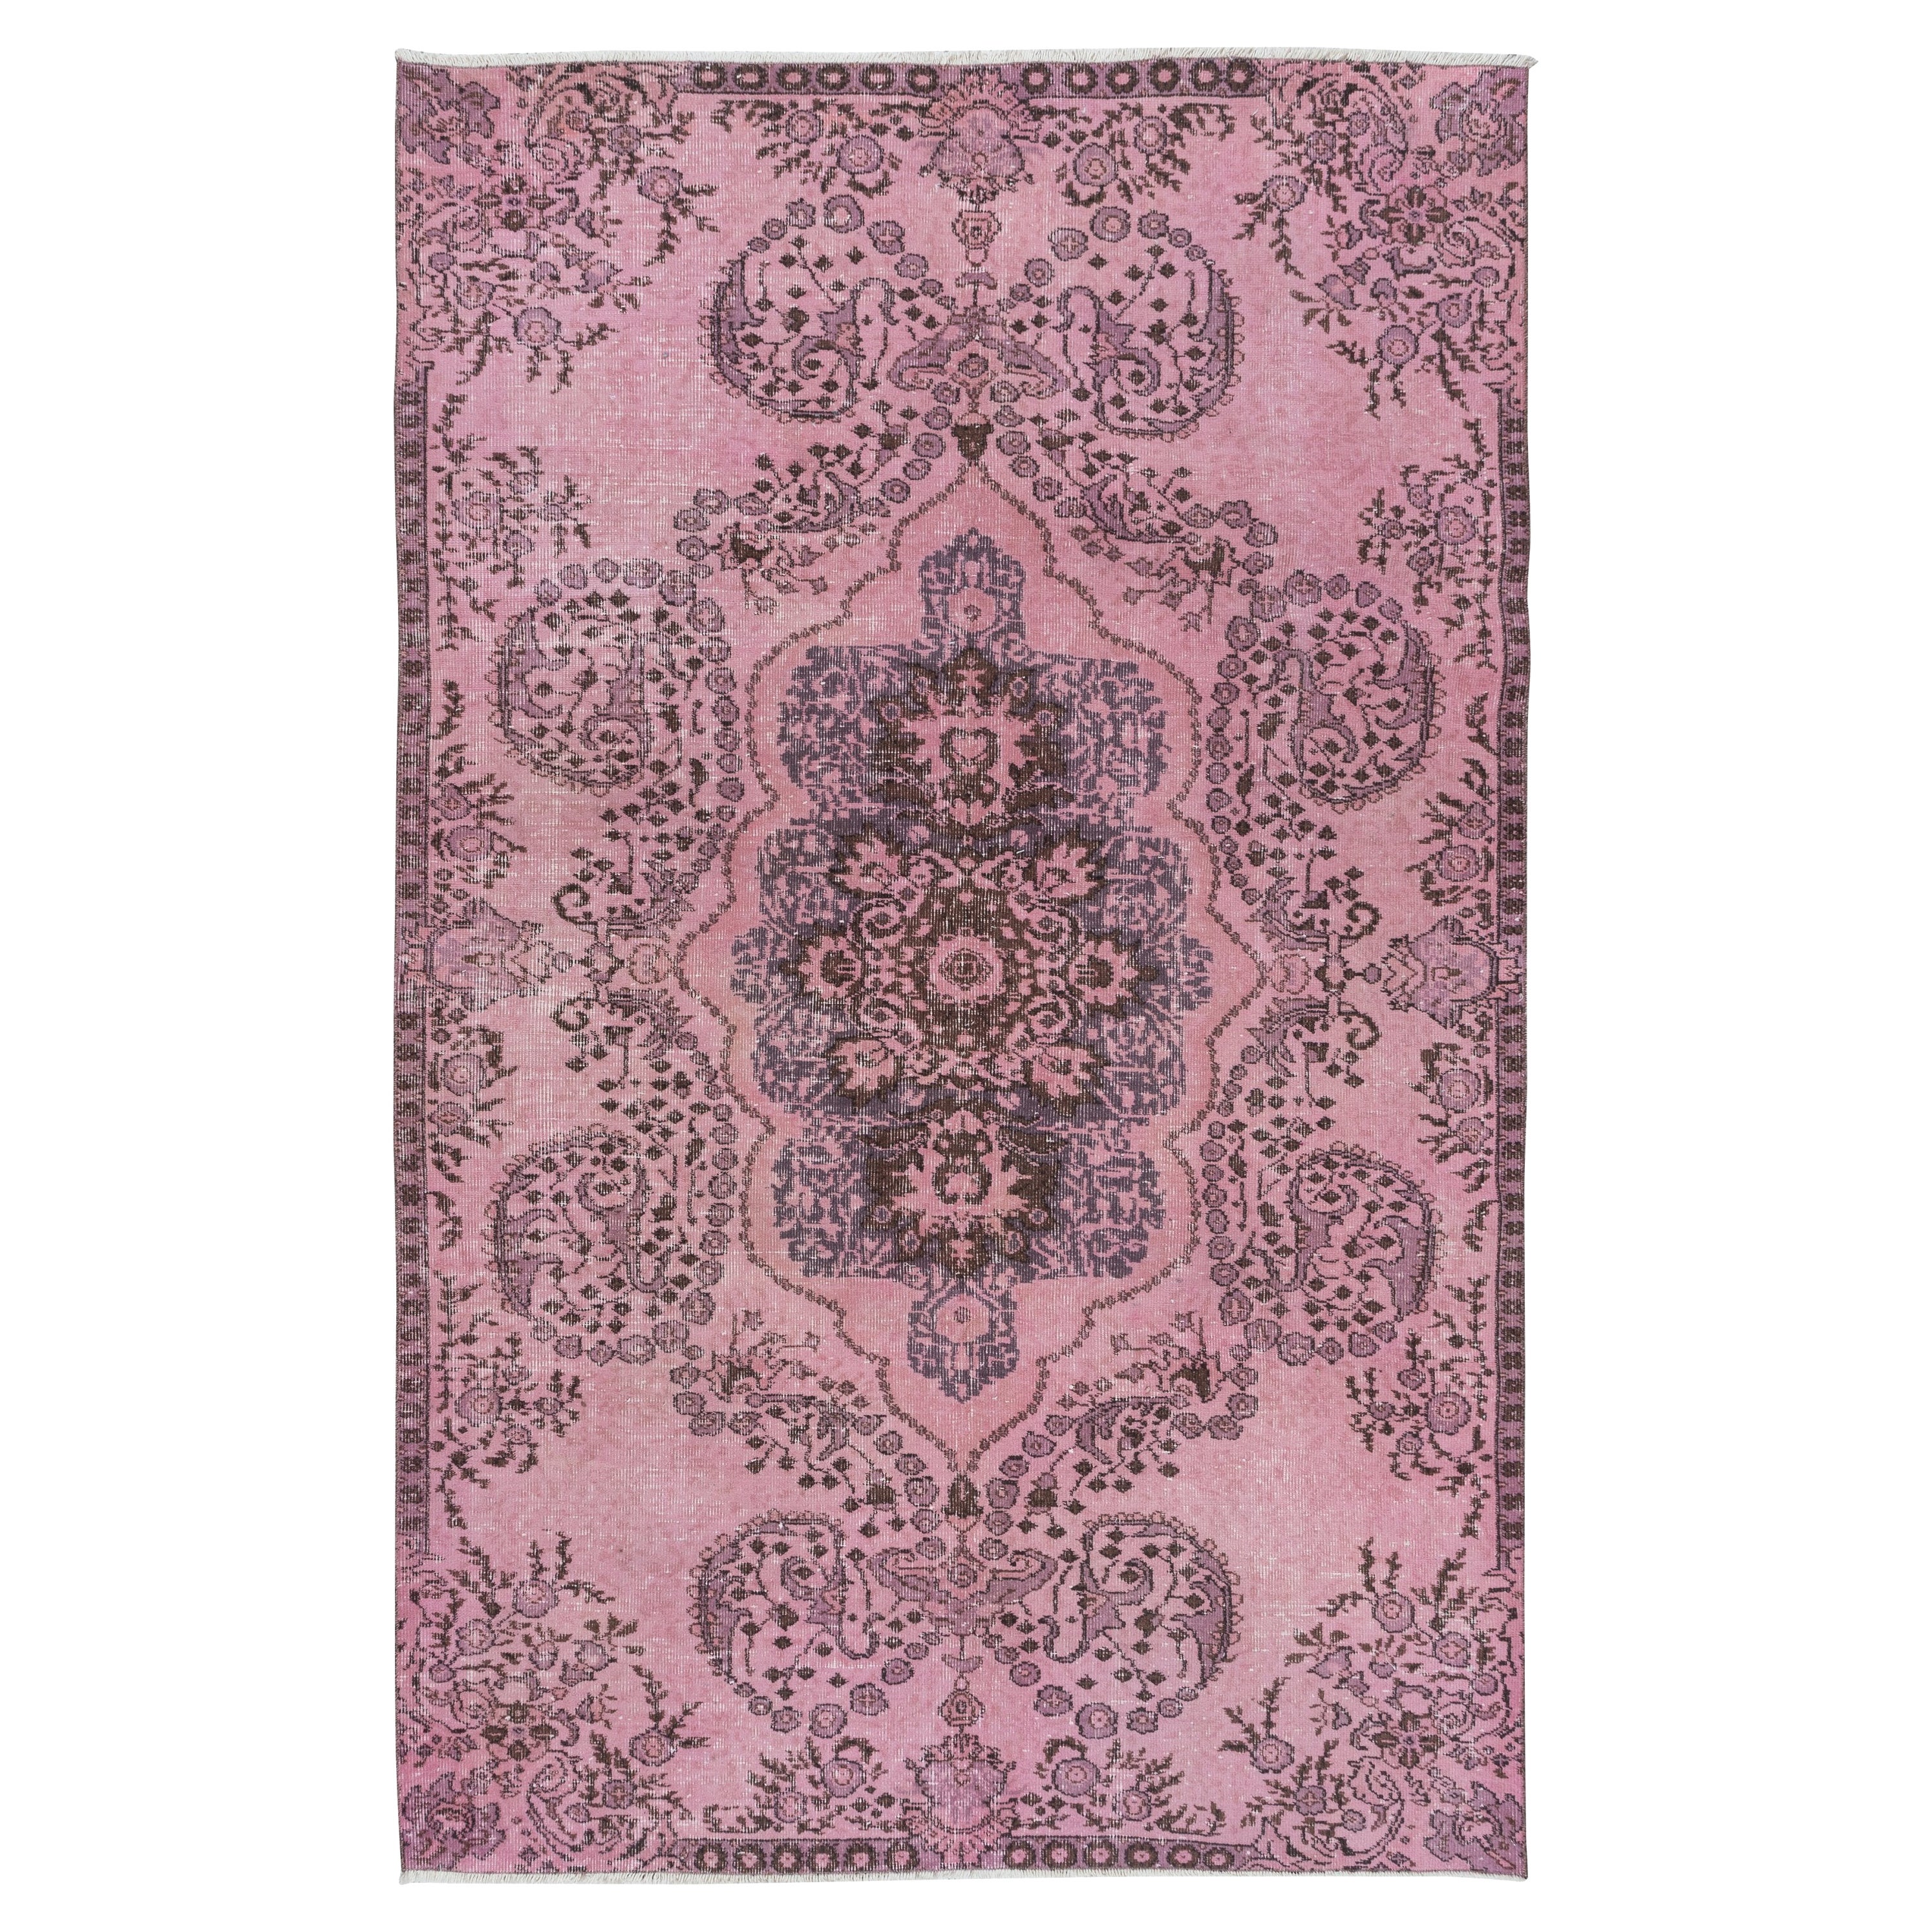 5.6x8.7 Ft Rustic Turkish Medallion Design Area Rug. Light Pink Handmade Carpet For Sale